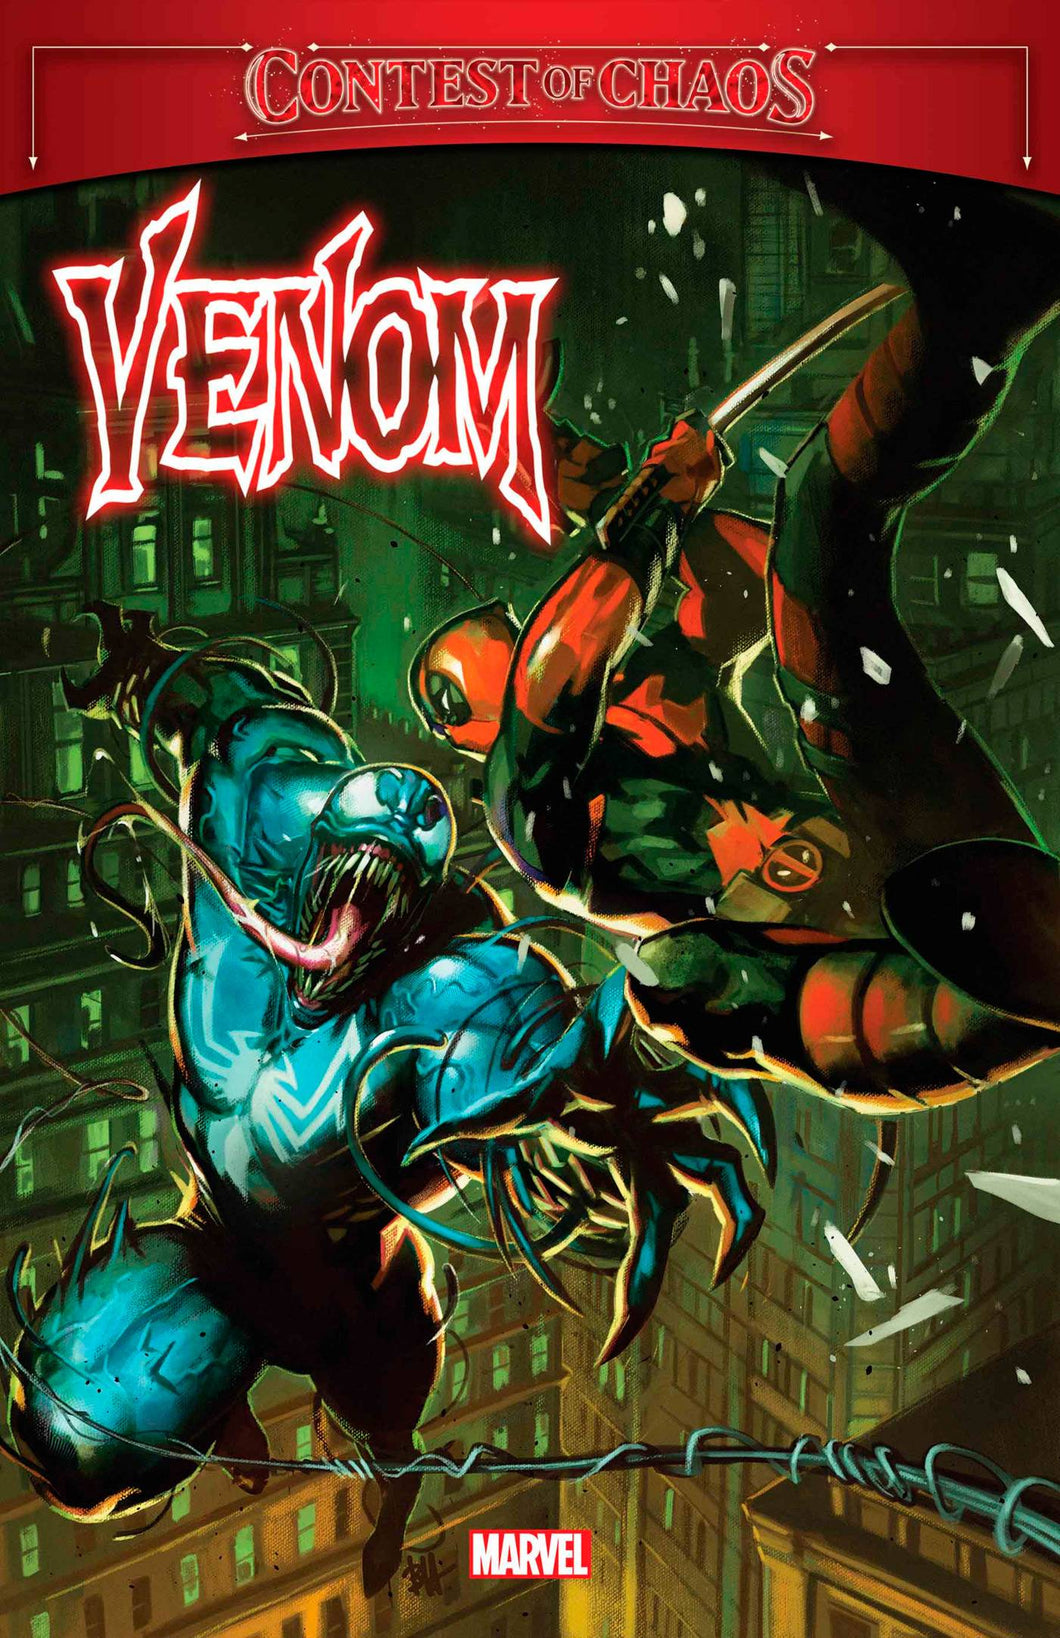 Venom Annual 1